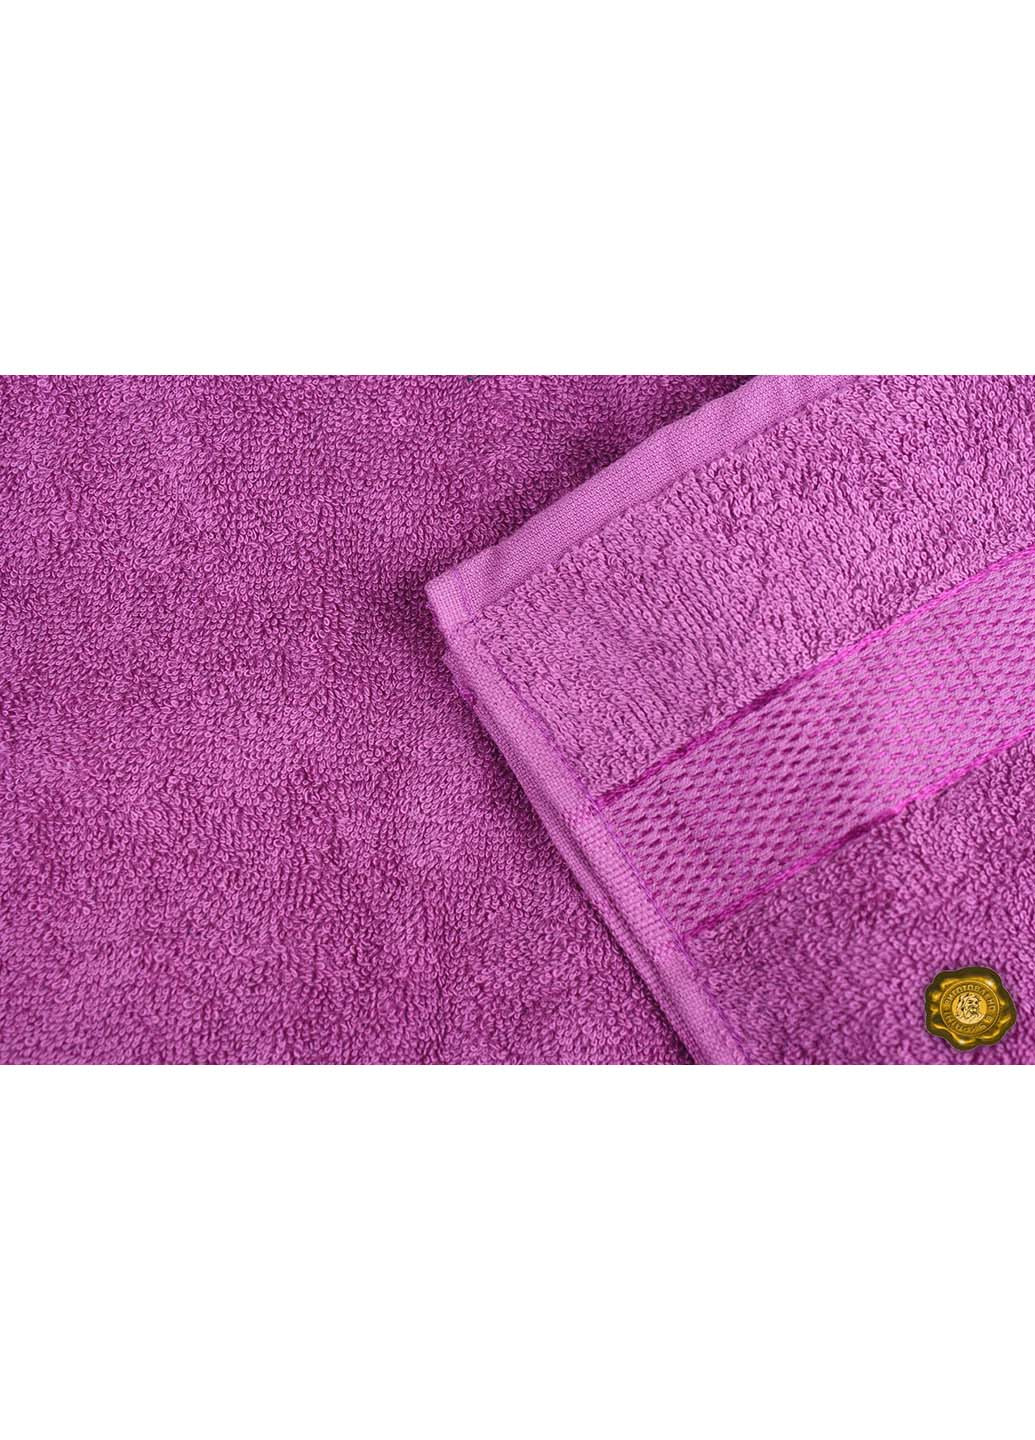 Еней-Плюс полотенце махровое бс0007 100х150 фиолетовый производство - Украина